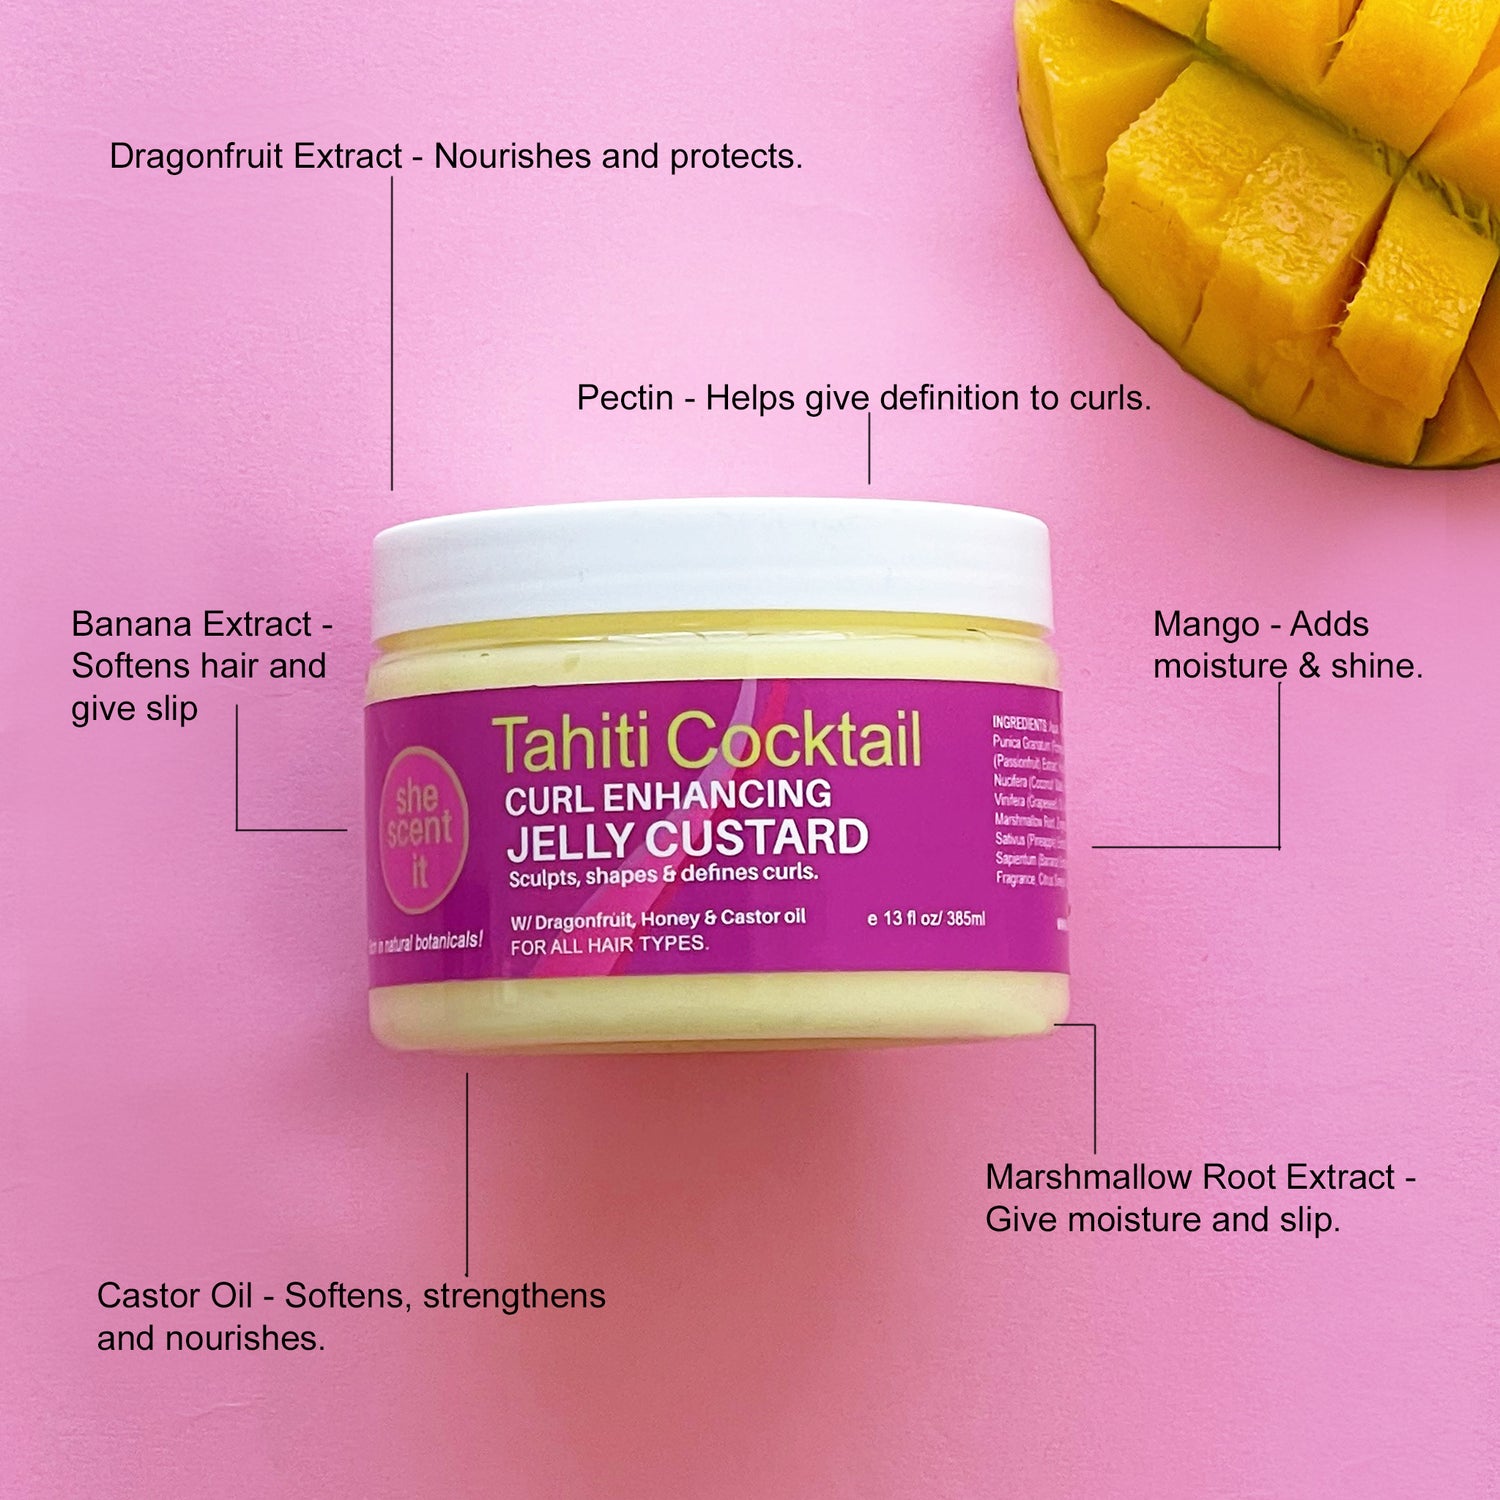 Tahiti Cocktail Curl Enhancing Jelly Custard